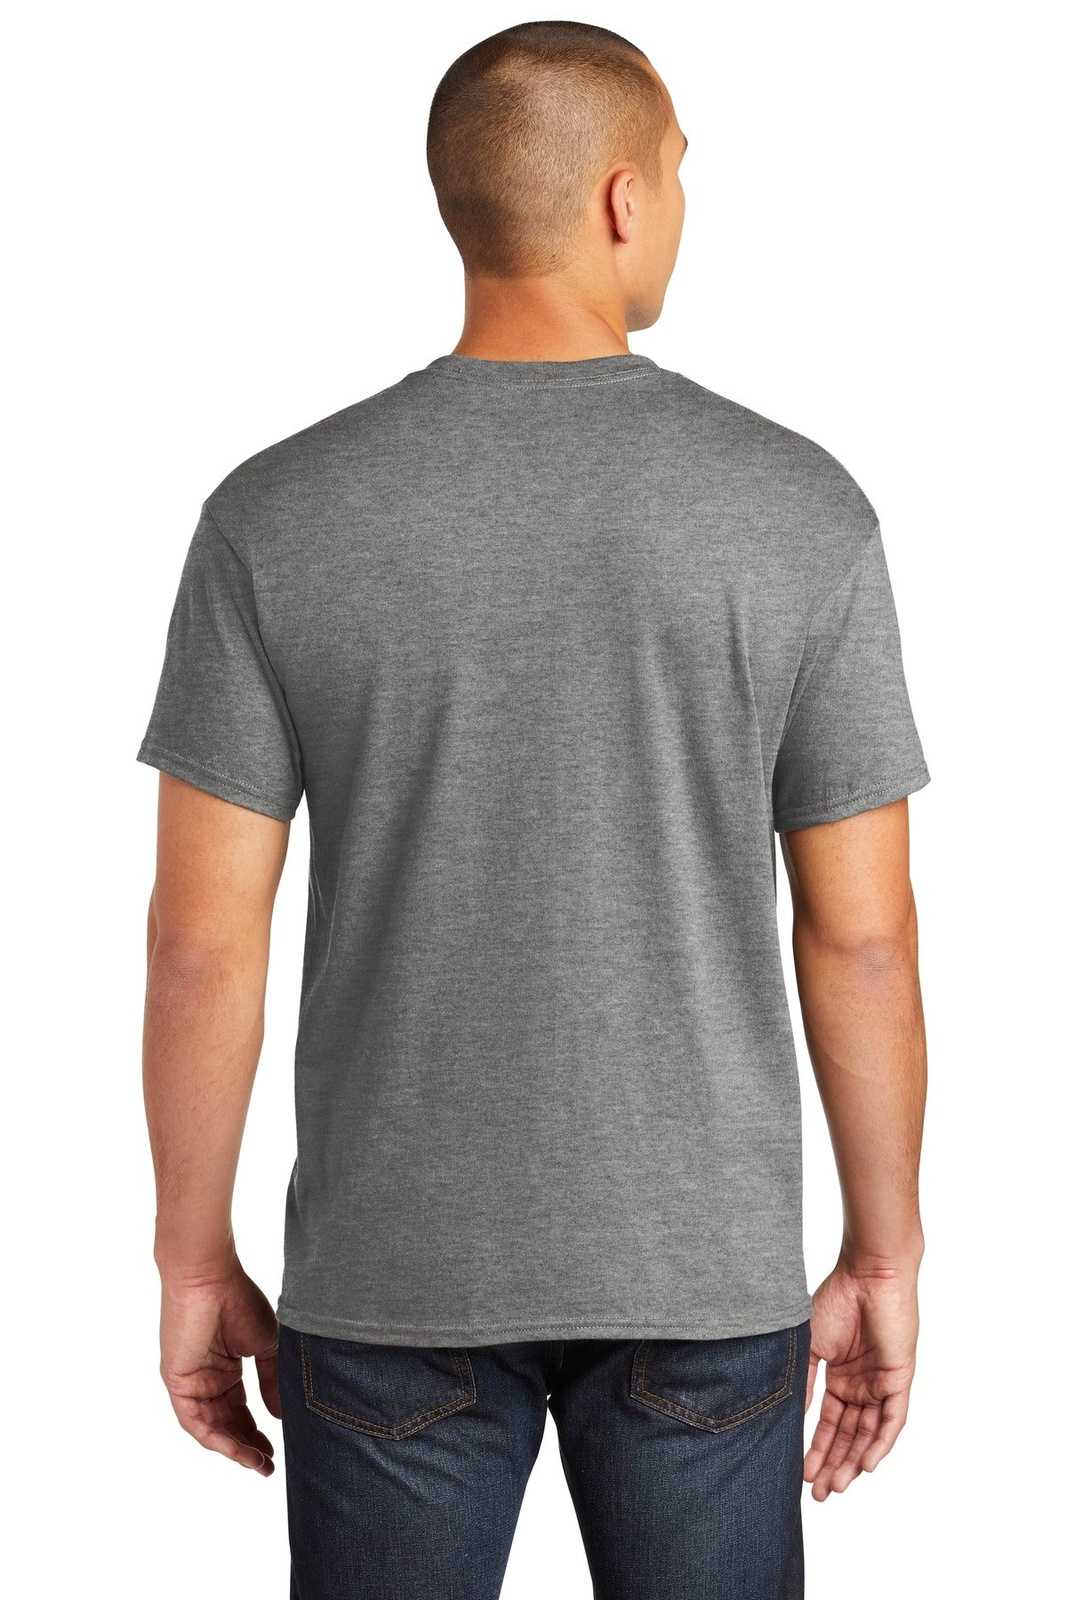 Gildan 5300 Heavy Cotton 100% Cotton Pocket T-Shirt - Graphite Heather - HIT a Double